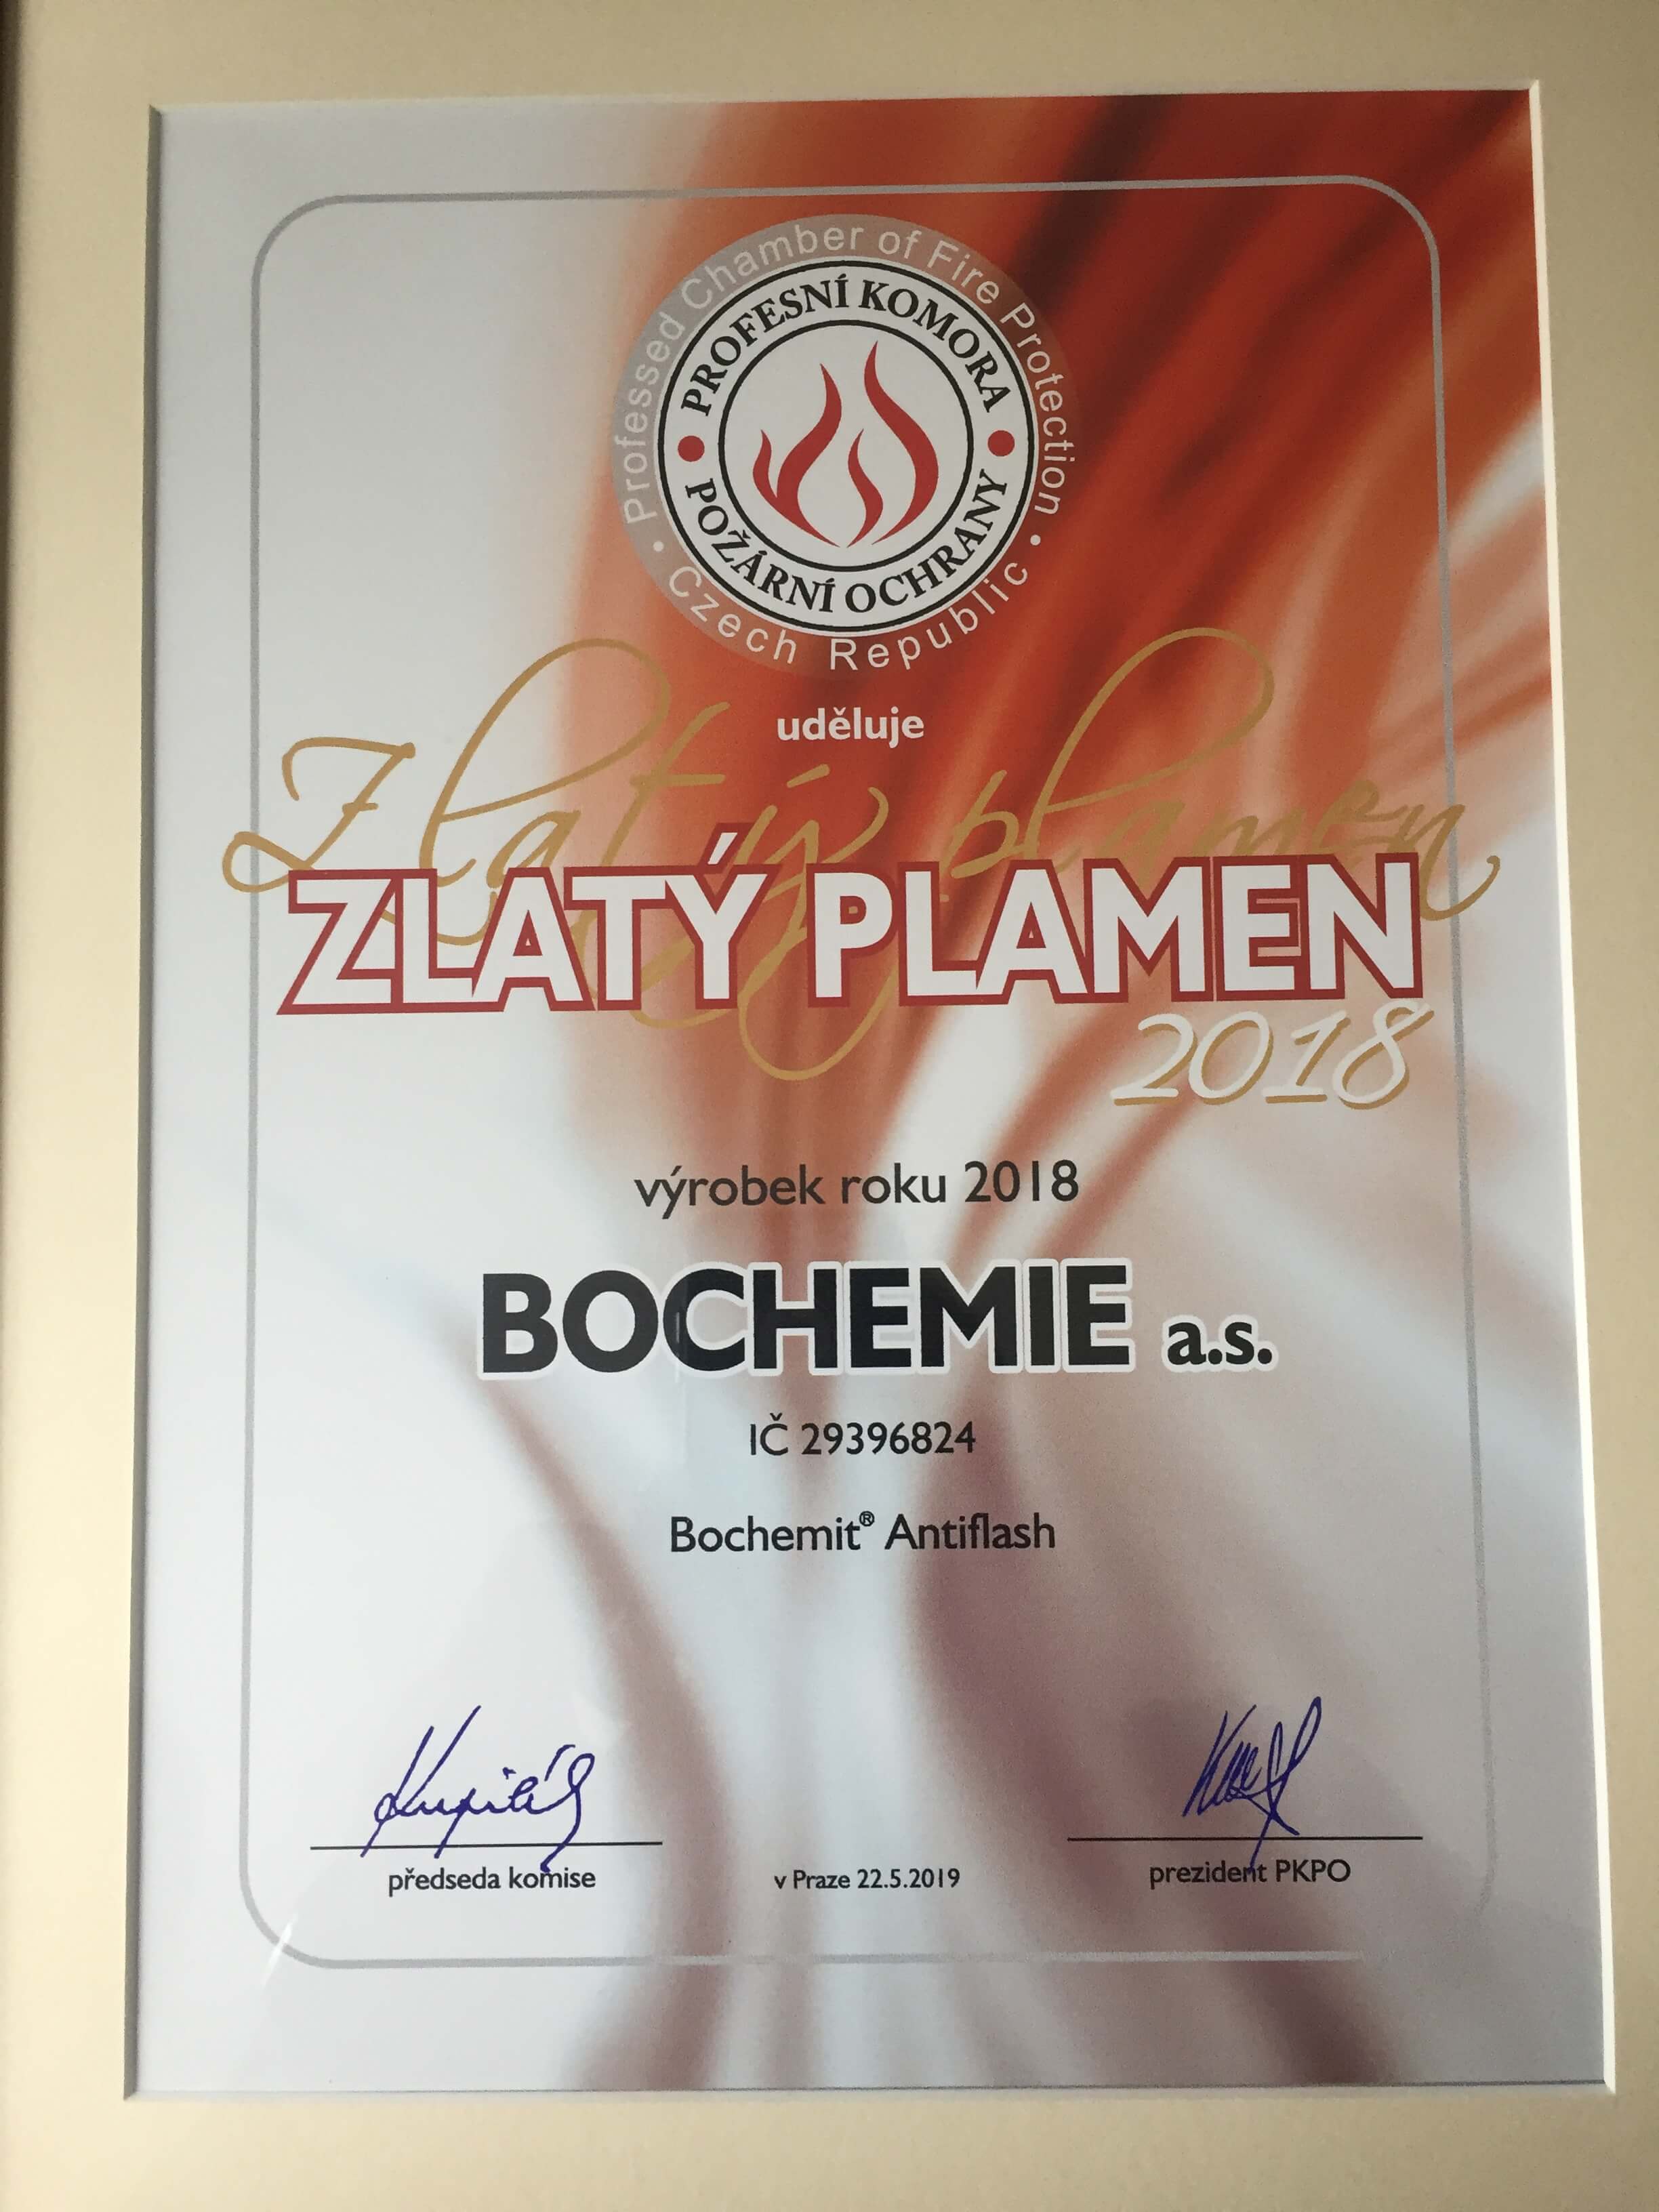 BOCHEMIT Antiflash otrzymał nagrodę Profesionální komory protipožární ochrany -  Profesjonalnej Izby  Ochrony Przeciwpożarowej Republiki Czeskiej (PKPO)